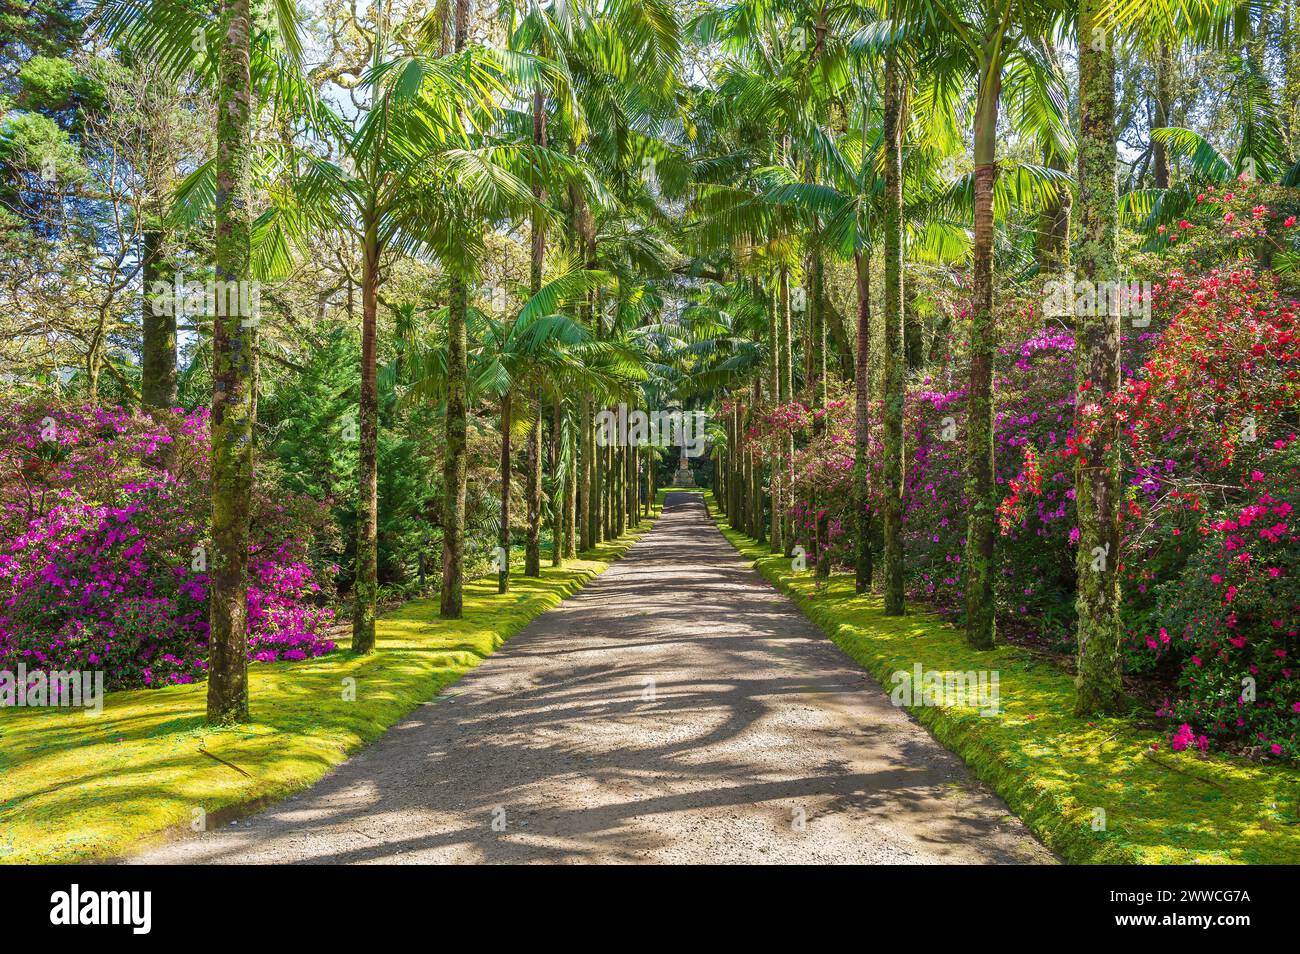 Passeggia attraverso gli incantevoli sentieri del Parque Terra nostra, un paradiso di meraviglie botaniche e di una vivace flora sull'isola di São Miguel, nelle Azzorre Foto Stock